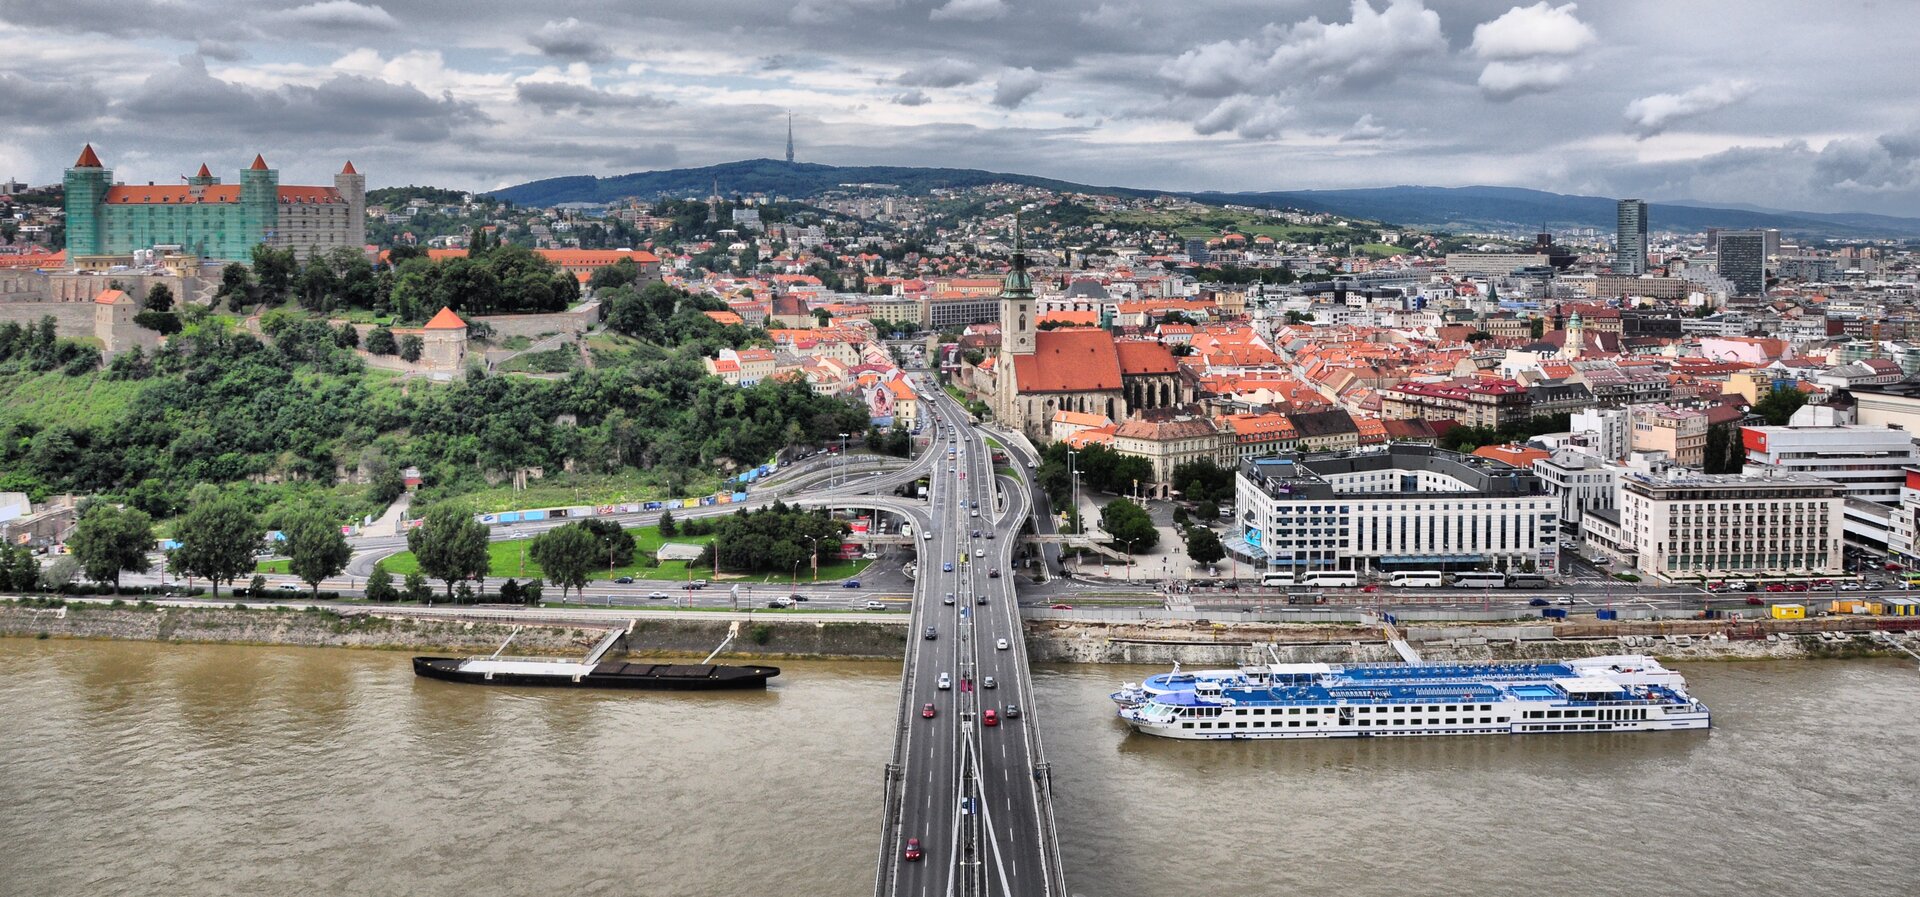 Widok z lotu ptaka na Stare Miasto w Bratysławie. Na pierwszym planie most, rzeka, statek wycieczkowy.